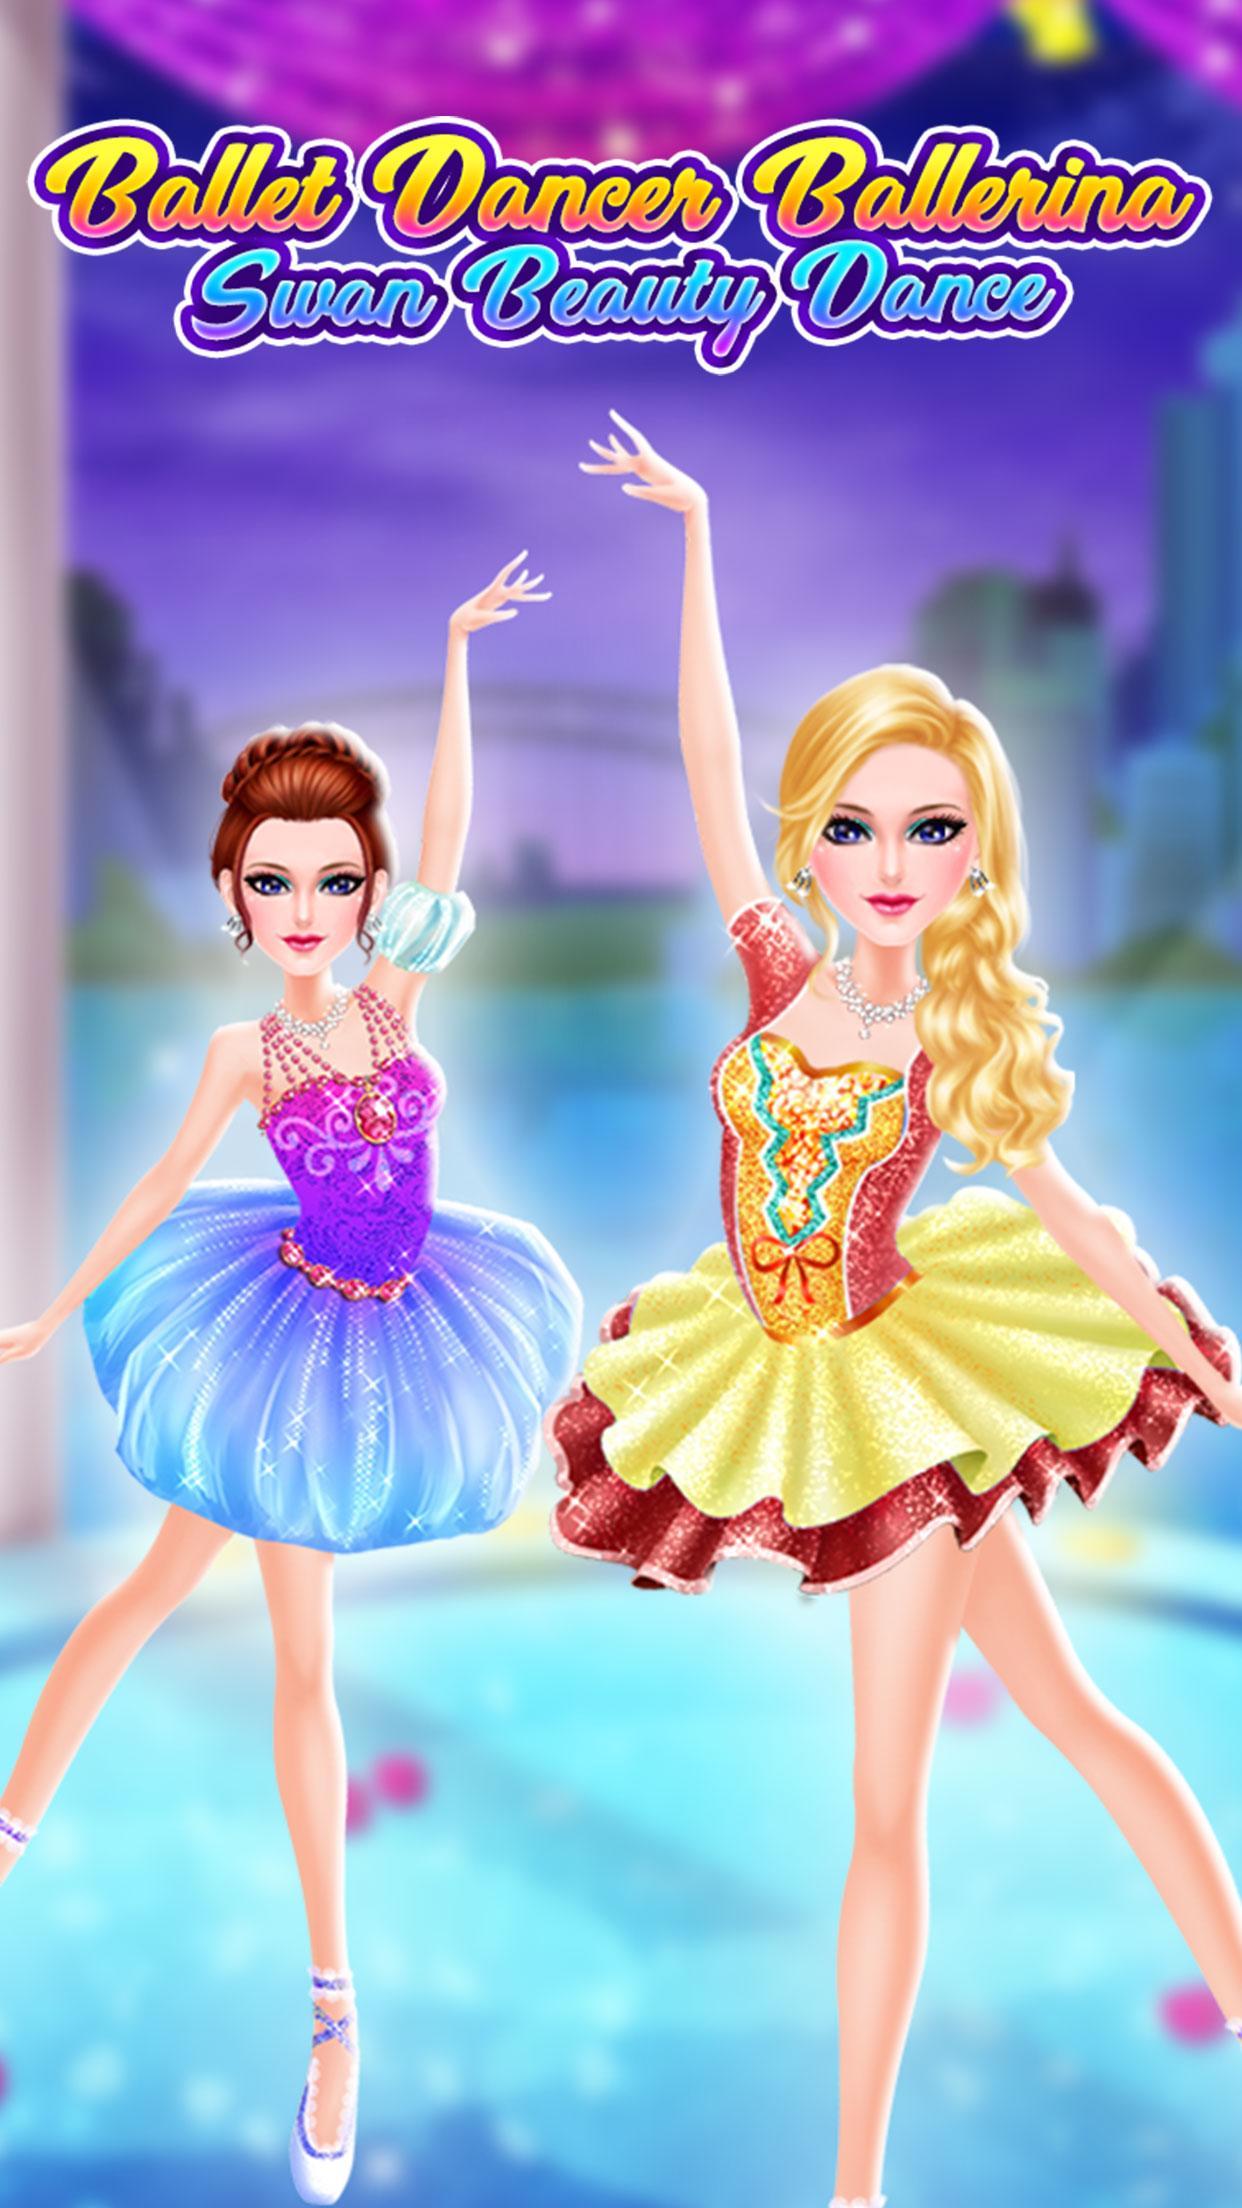 Ballet Dancer Ballerina - Swan Beauty Dance for Android - APK Download